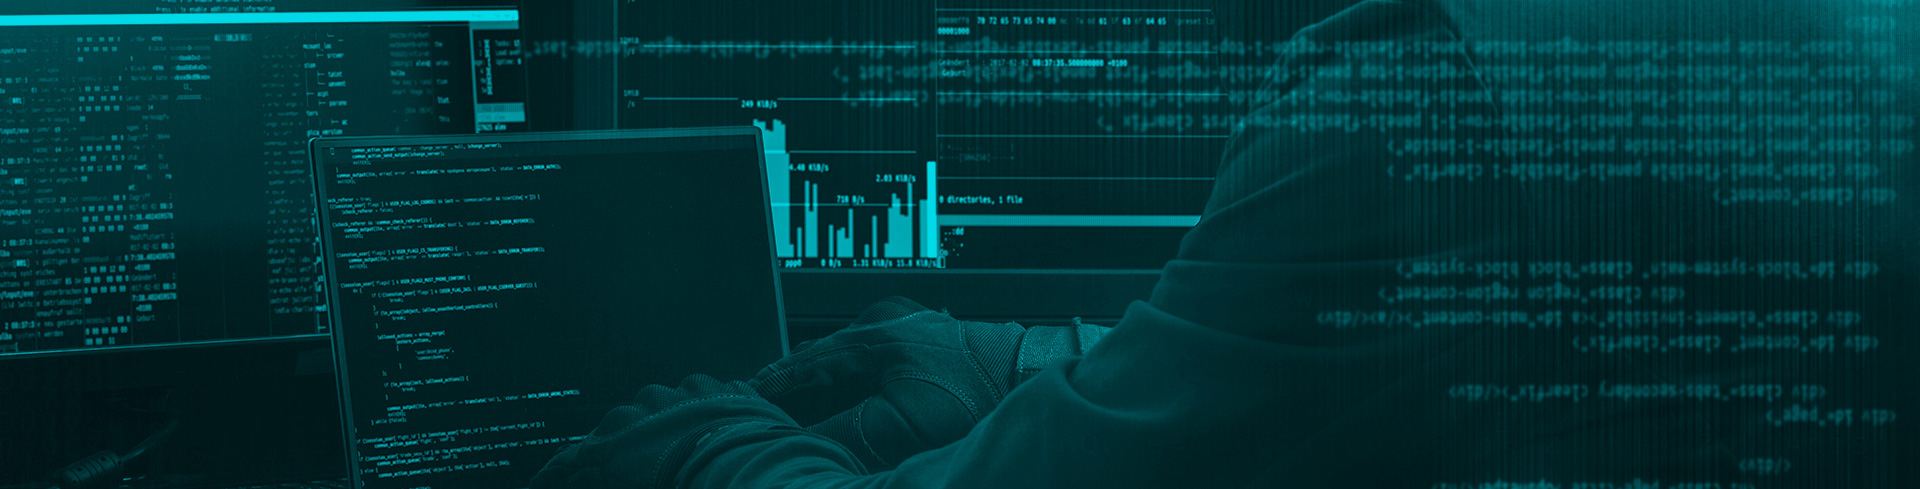 Curso Cibercrimen digital: Retos y perspectivas jurídicas y tecnológicas emergentes